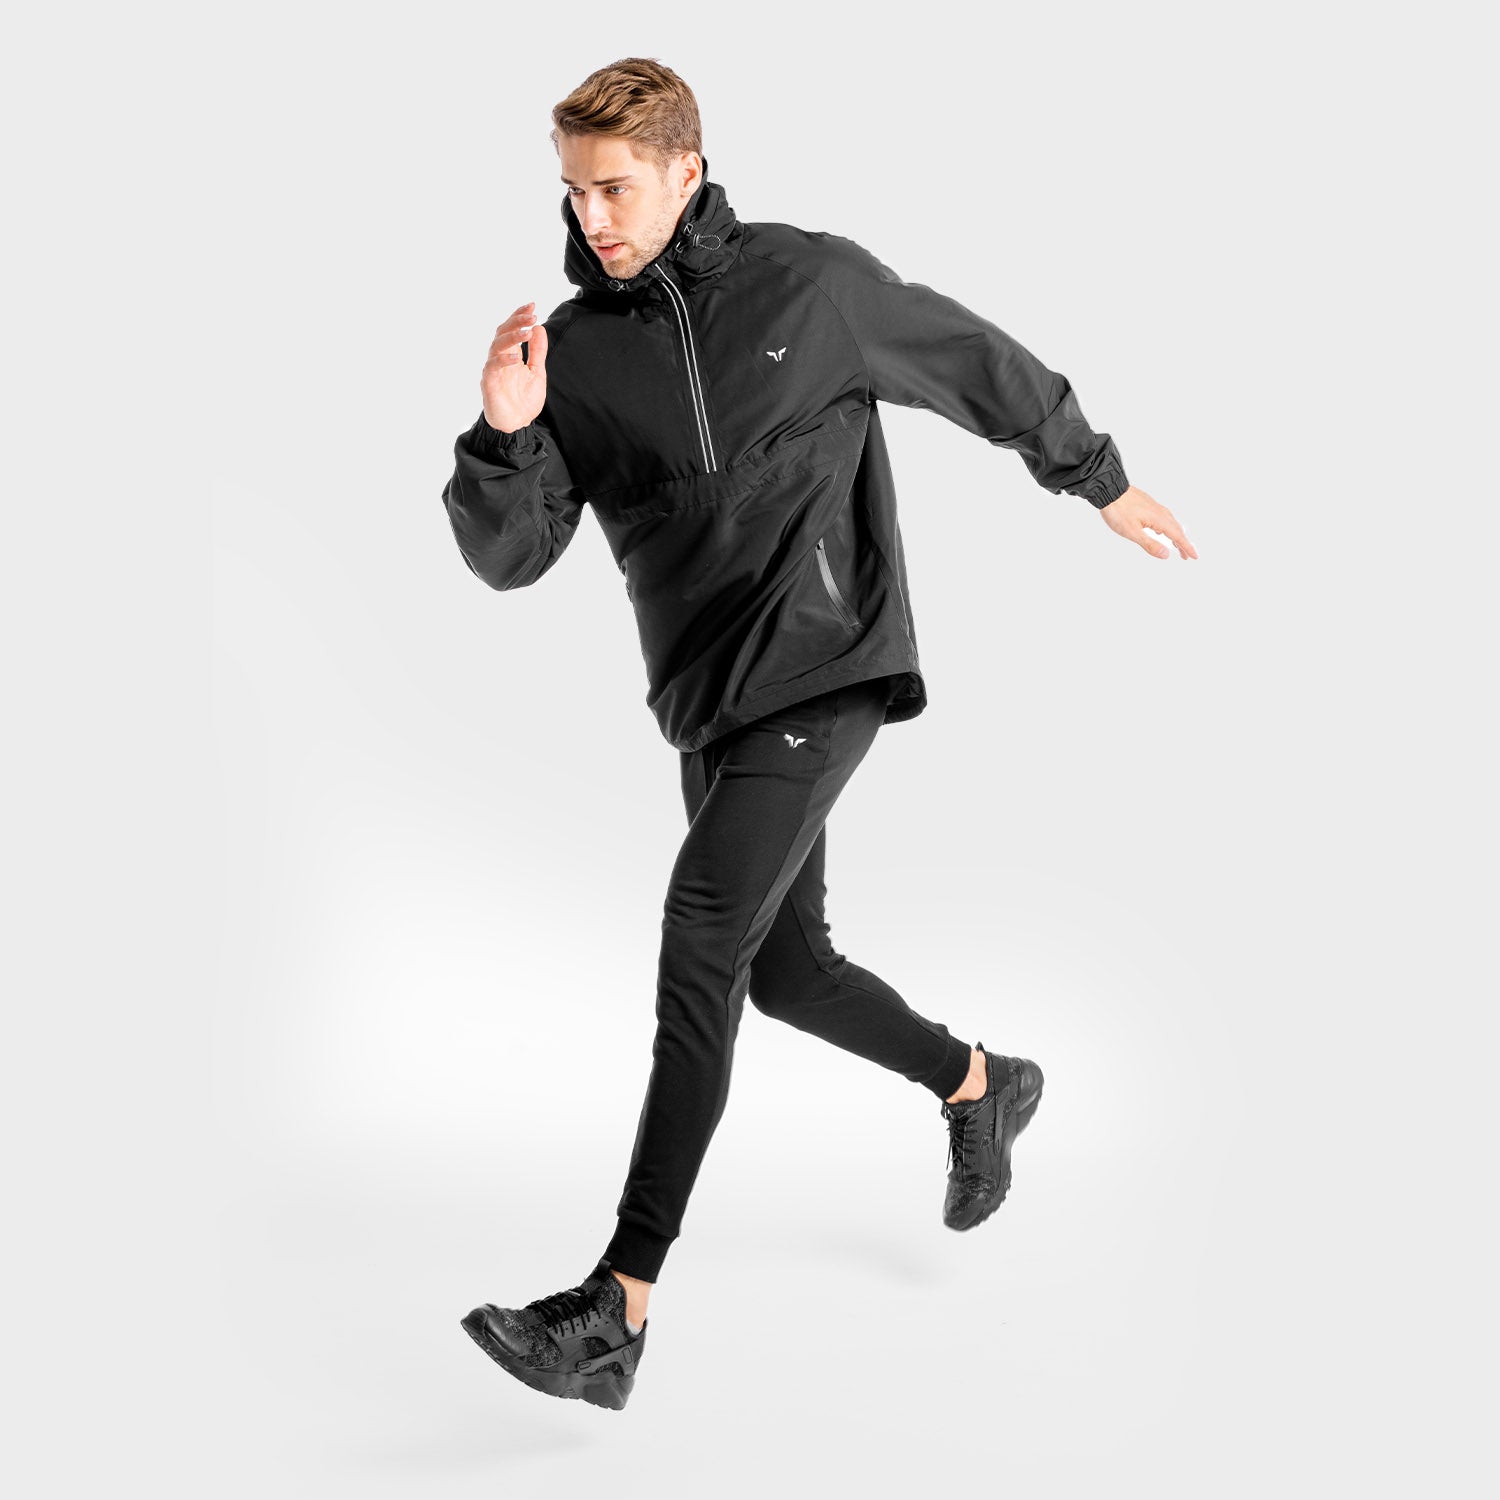 squatwolf-workout-hoodies-for-men-core-windbreaker-black-gym-wear